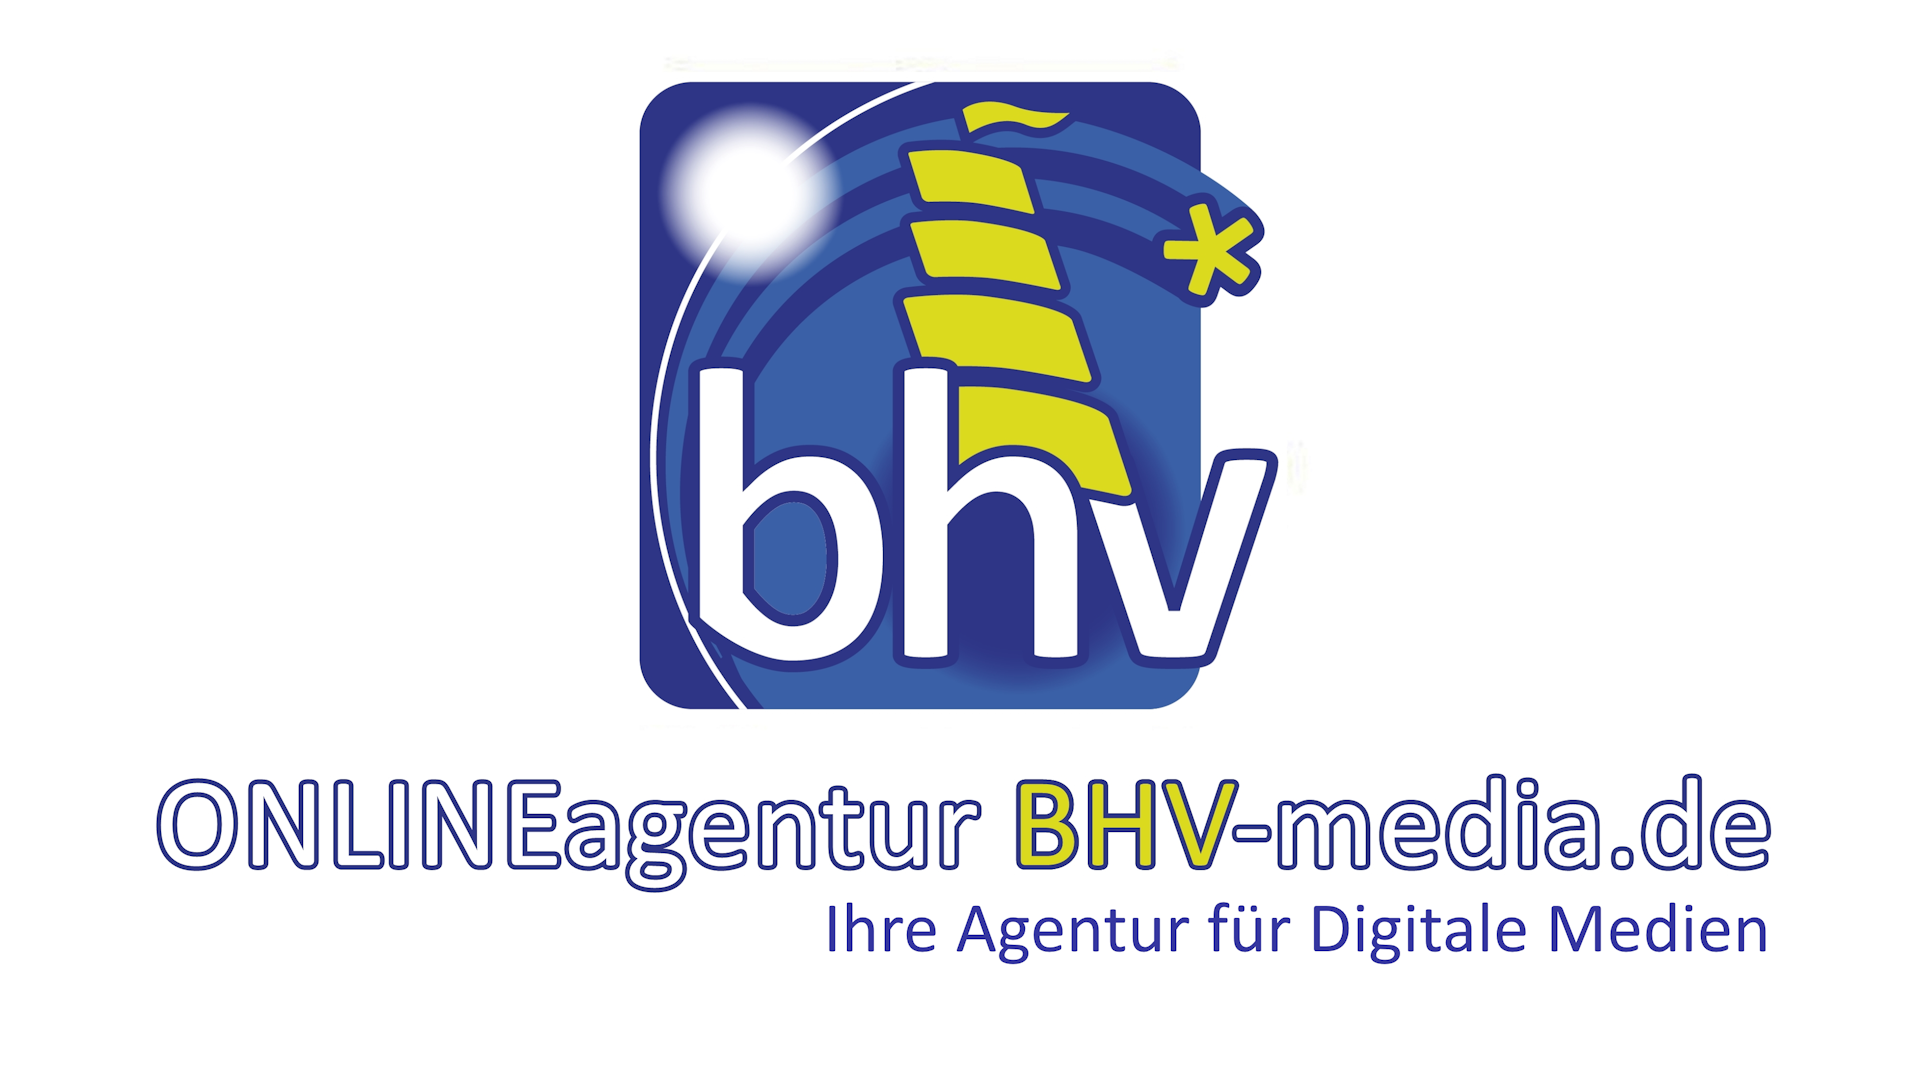 BHV-media